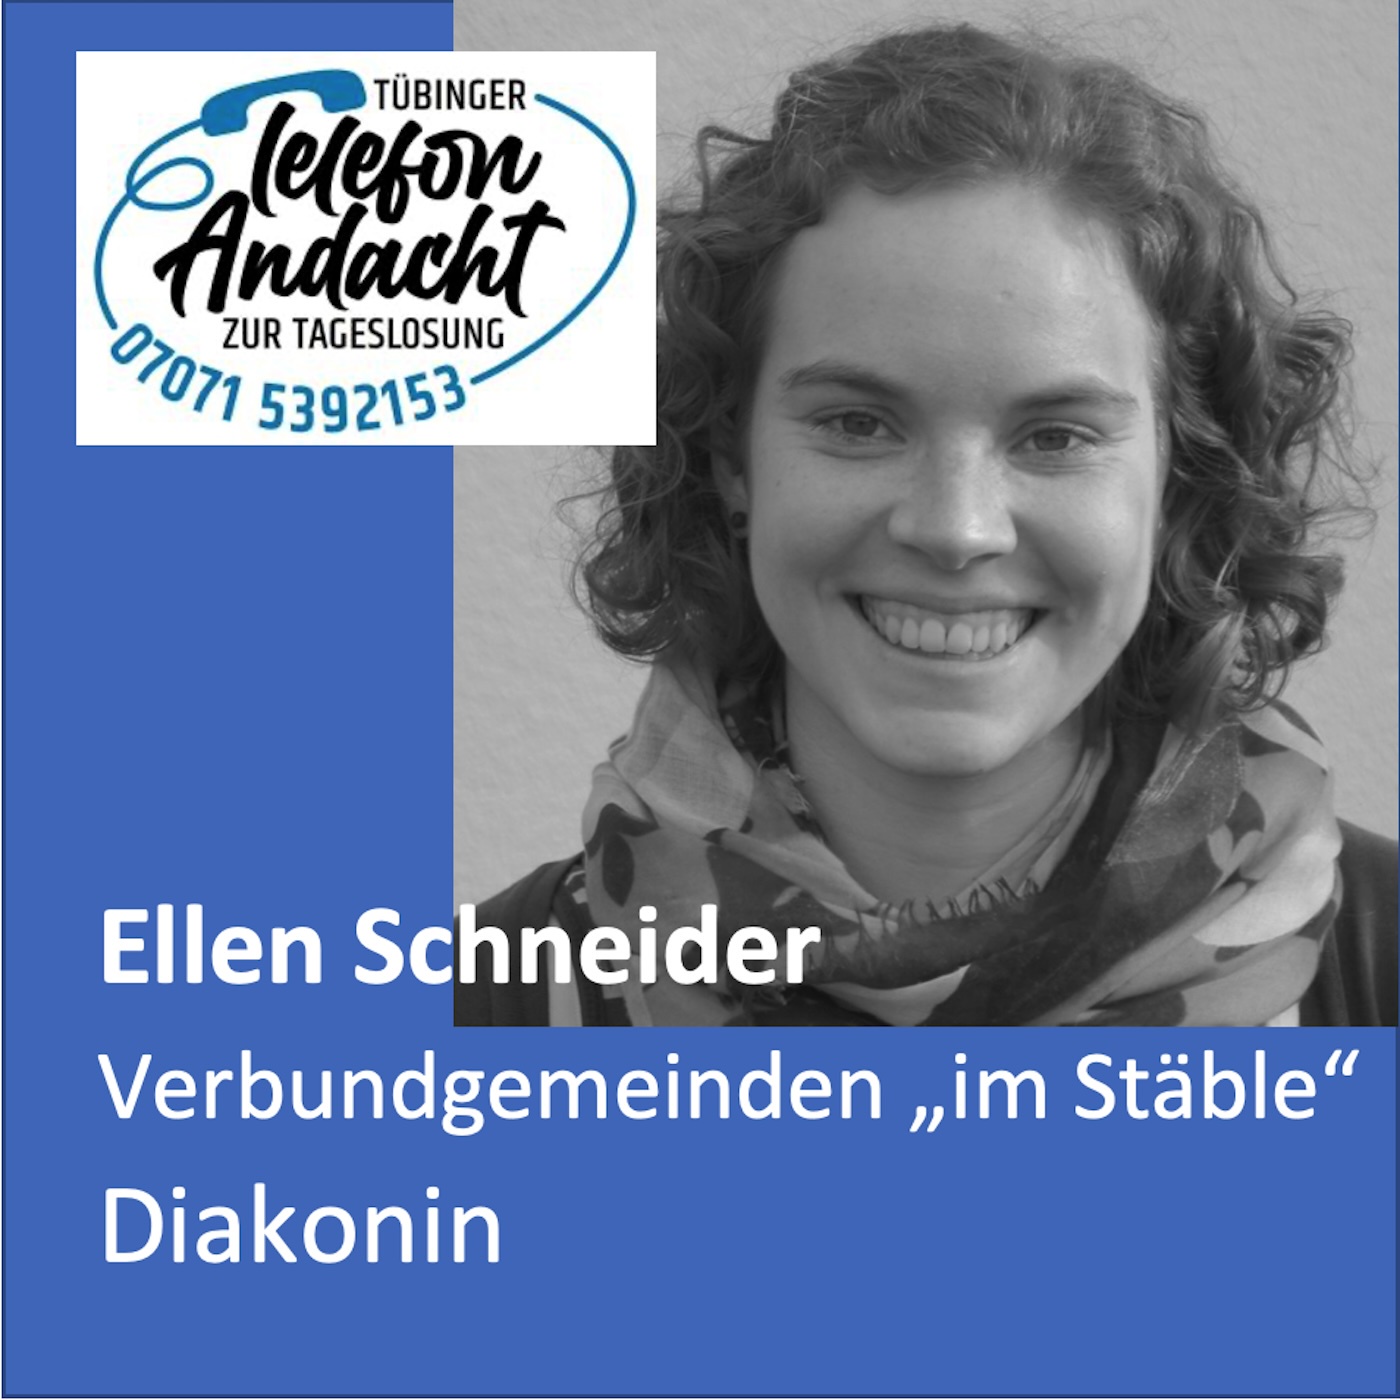 24 07 15 Ellen Schneider